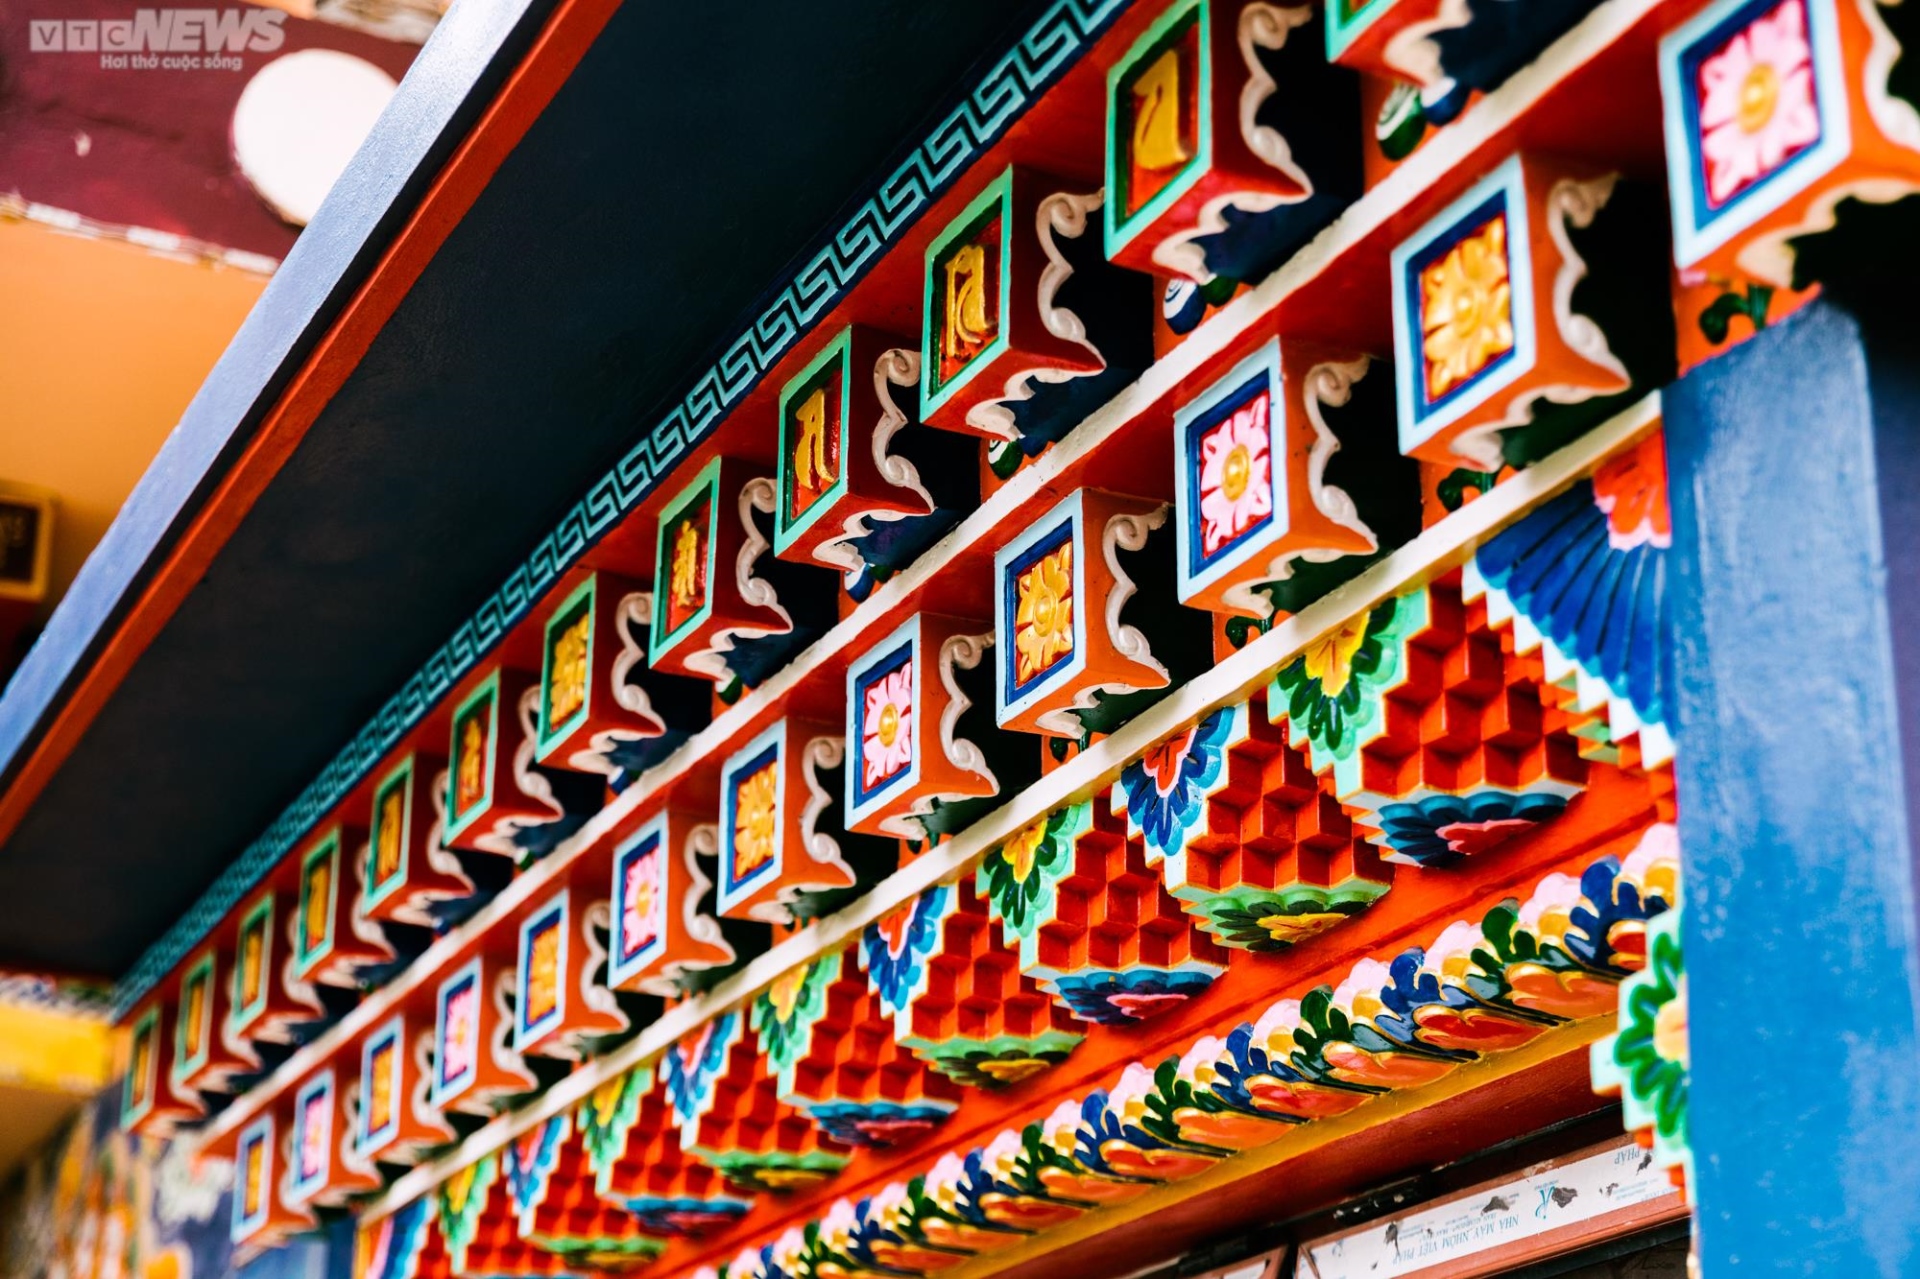 Chiêm ngưỡng ngôi chùa Tây Tạng 600 năm tuổi độc nhất tại Hà Nội - Ảnh 9.